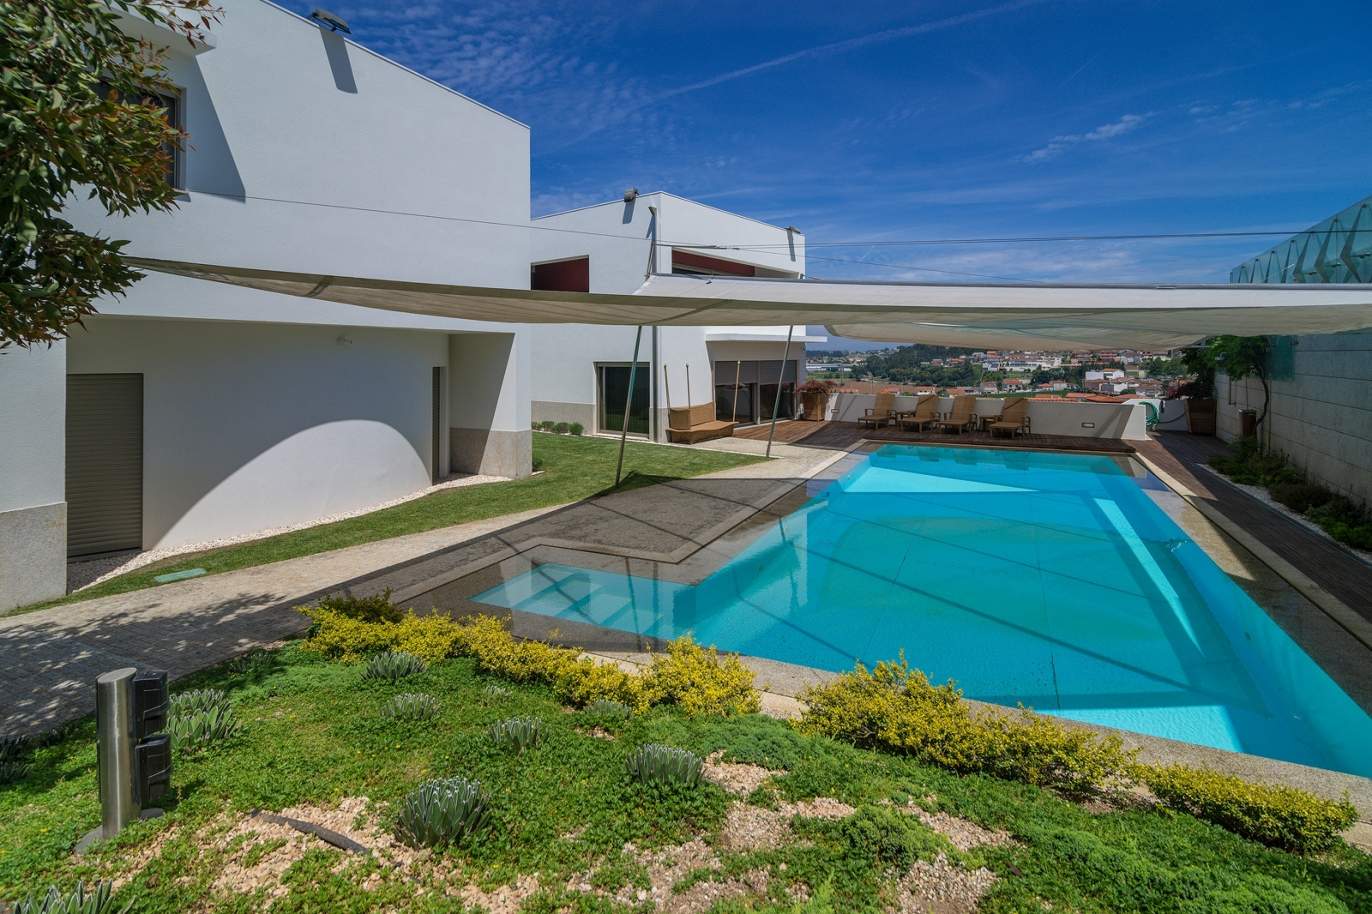 Moradia V3, com piscina e jardim, para venda, na Trofa, Porto, Portugal_154947